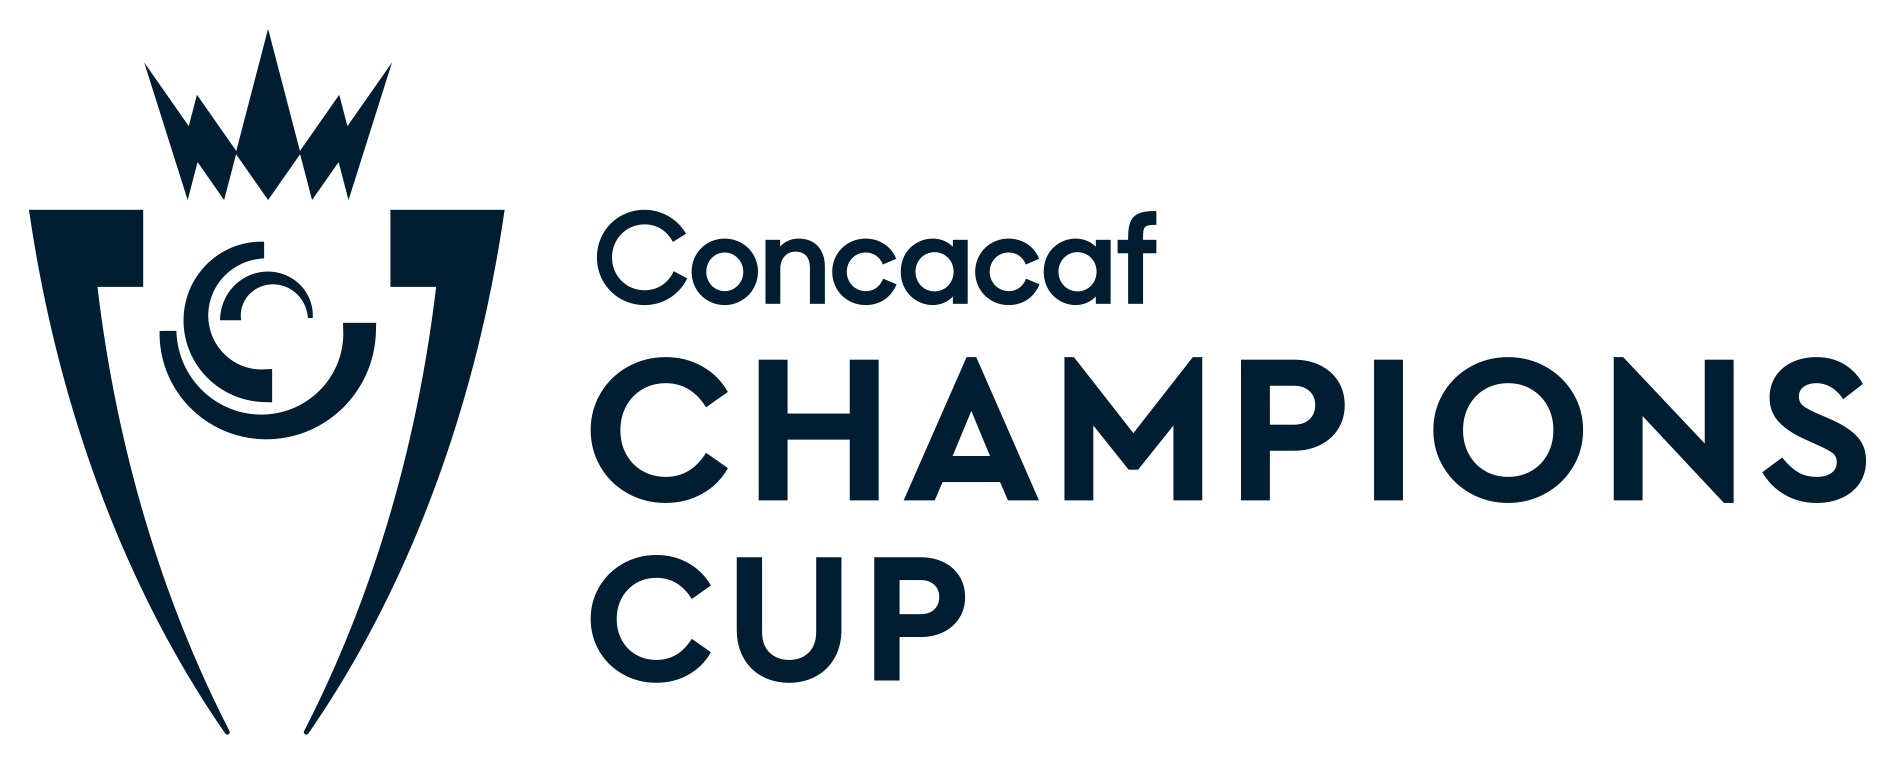 Concacaf anuncia criterios de clasificación para expandida Liga de Campeones 2024